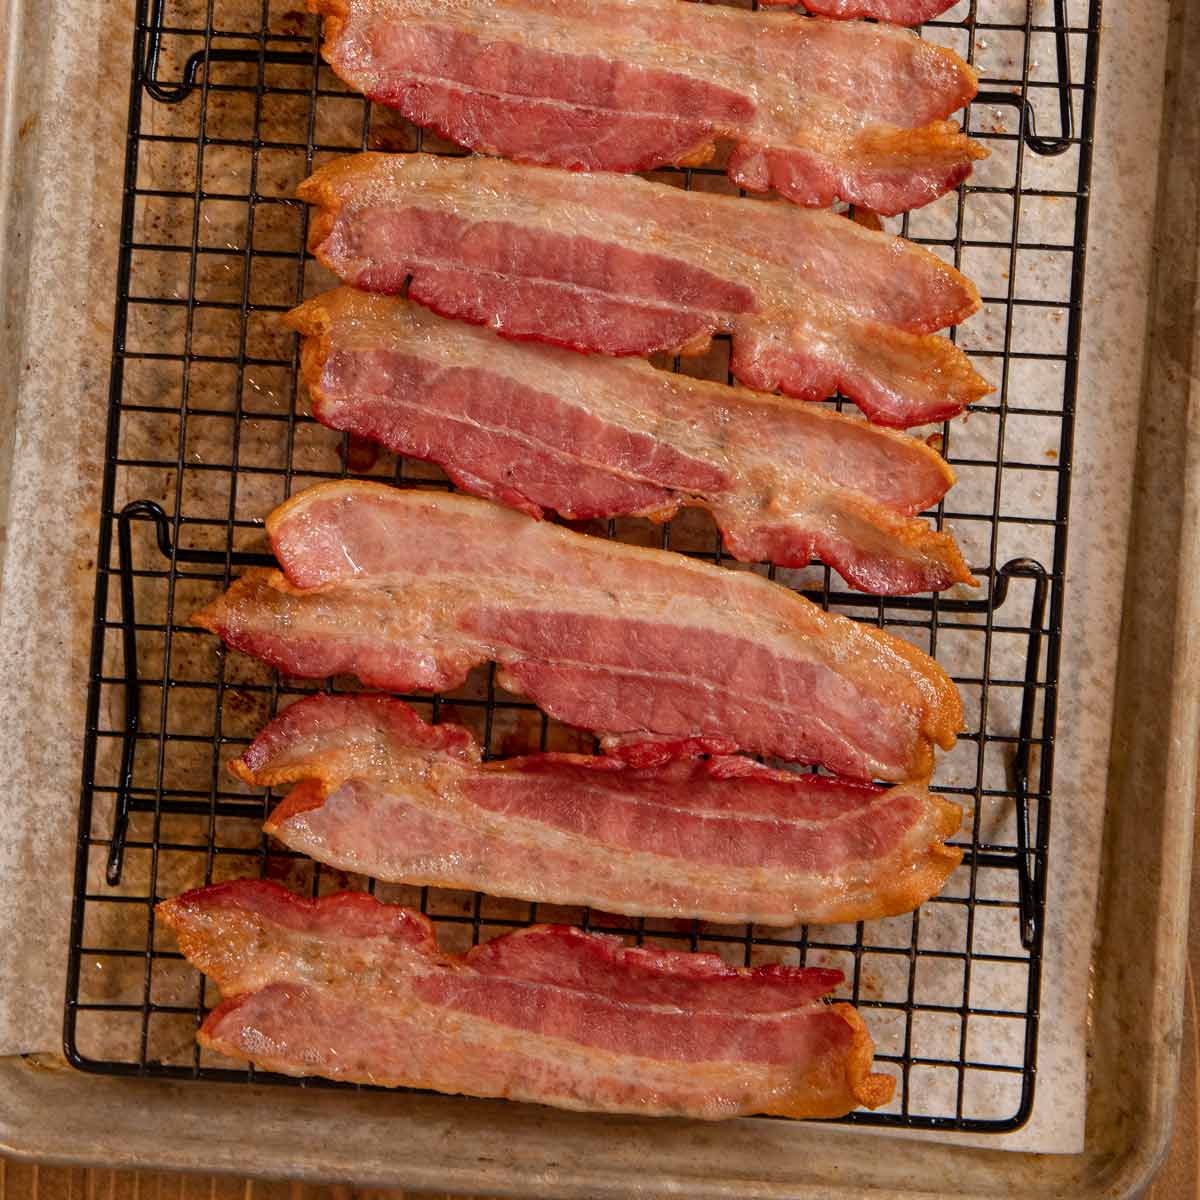 https://dinnerthendessert.com/wp-content/uploads/2021/01/Oven-Baked-Bacon-1x1-1.jpg